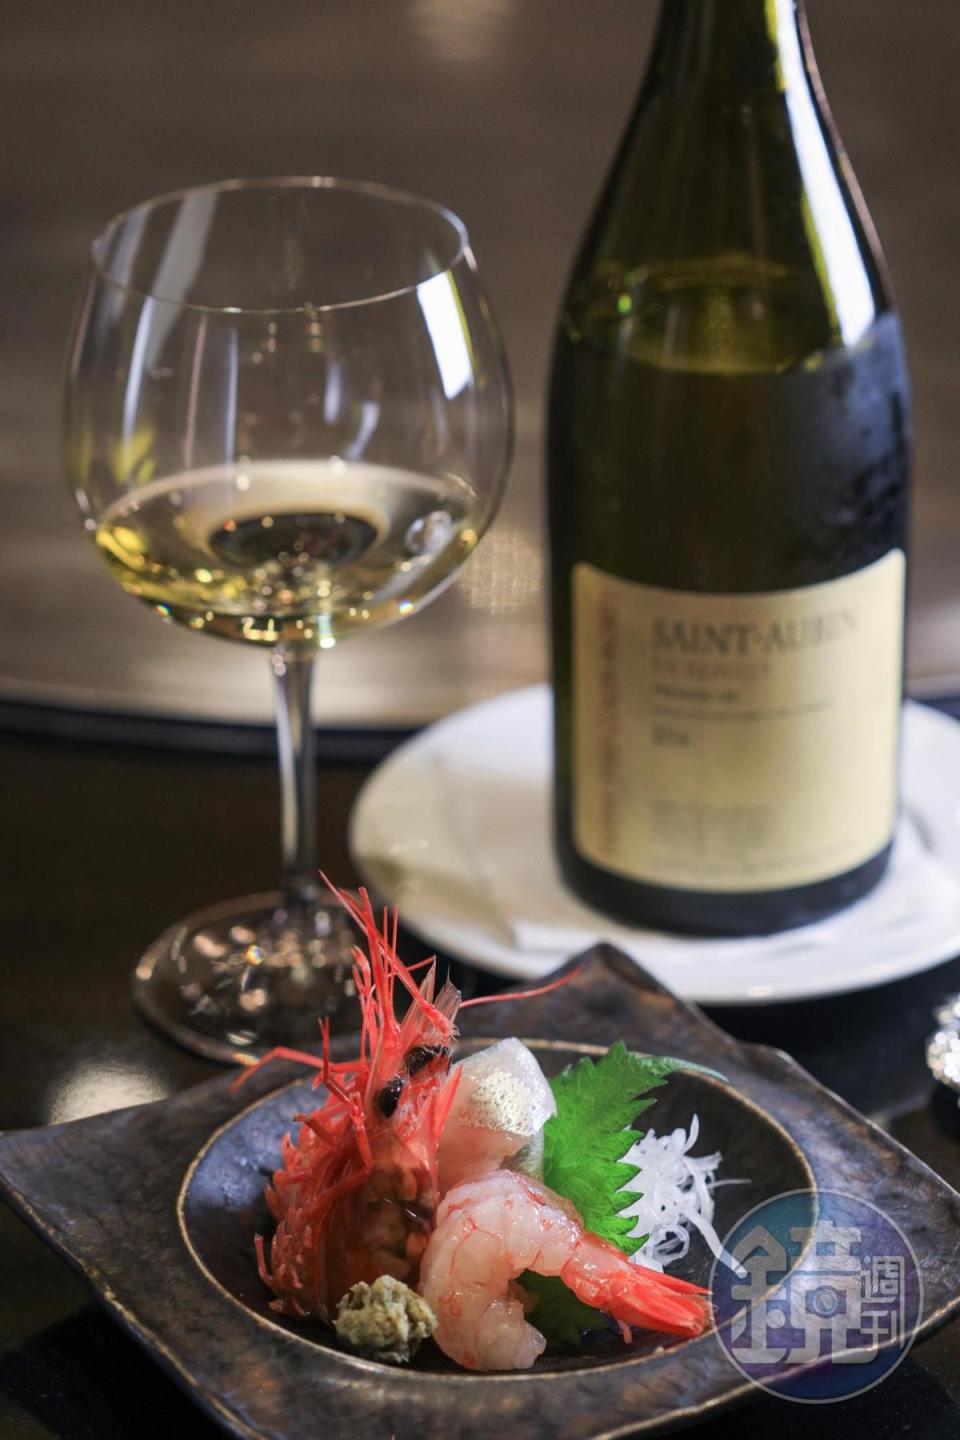 具礦石風味、成熟果香的2014年法國白酒，搭配生魚片，互不搶戲，反而加分。